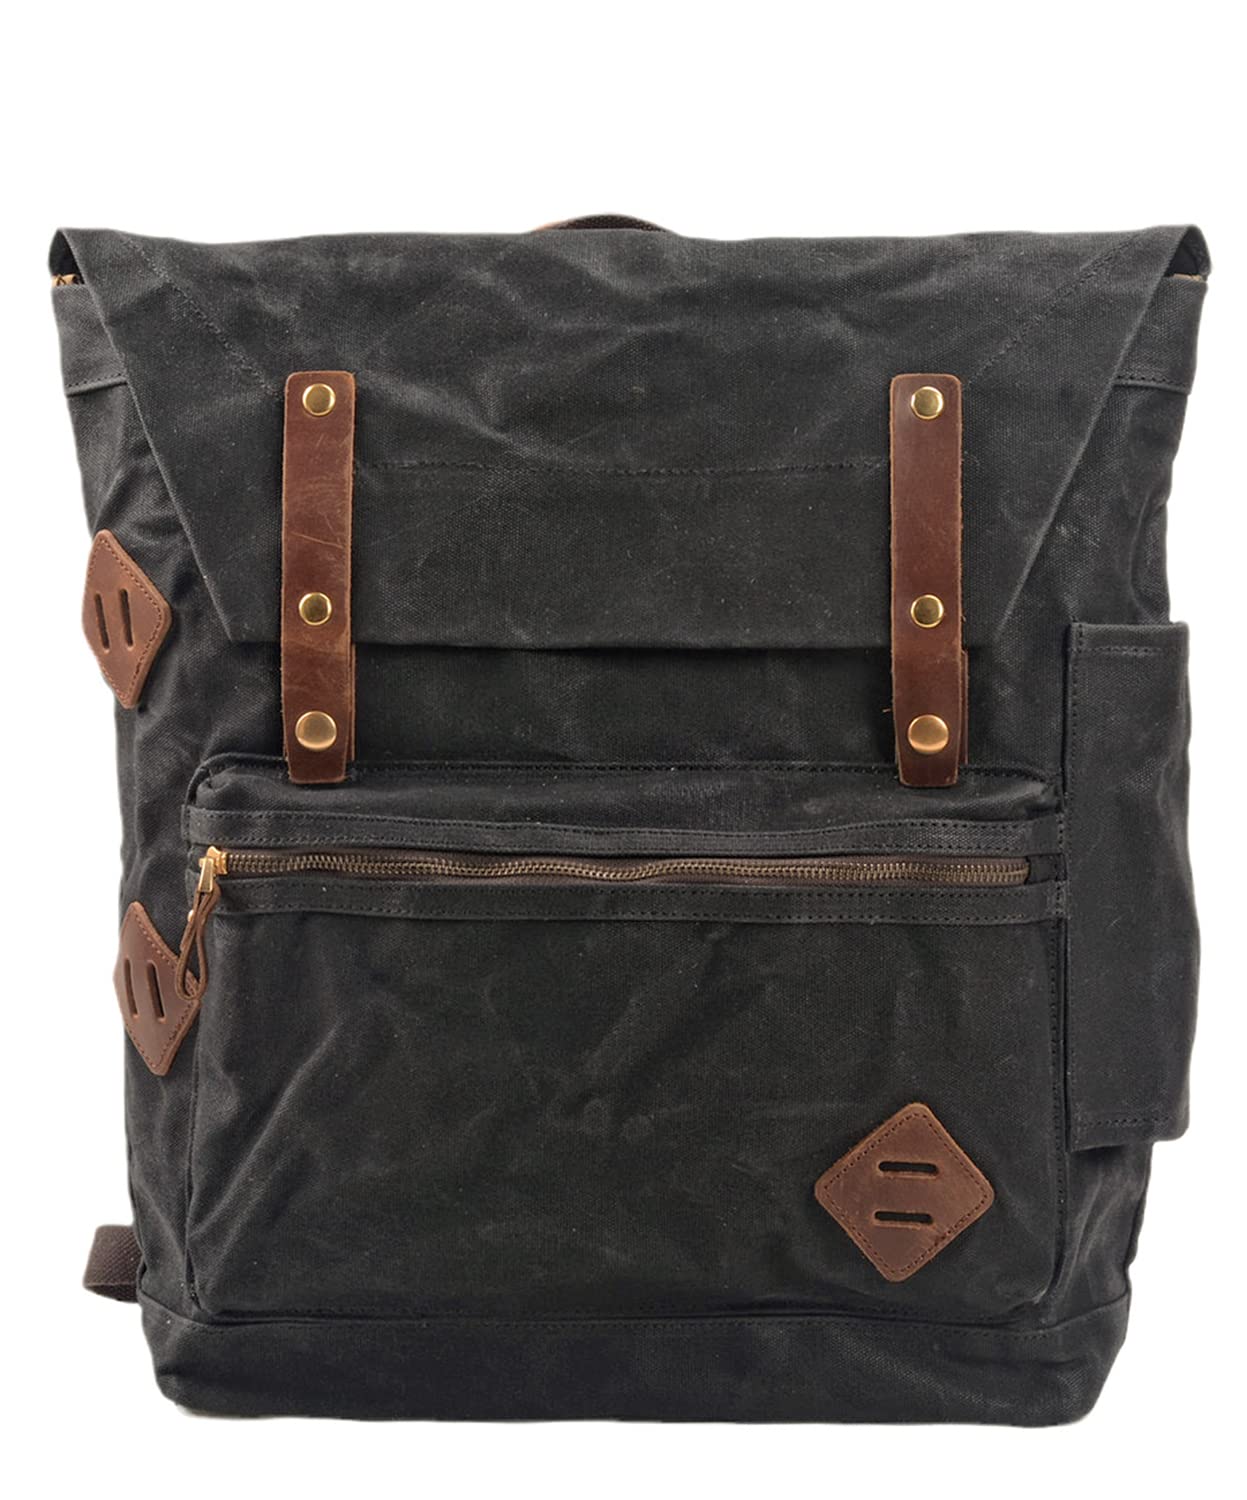 送料無料WUDON Canvas Leather Laptop Backpack for Men - Casual Style Lightweight Shoulder Rucksack for Daypack Travel Hiki